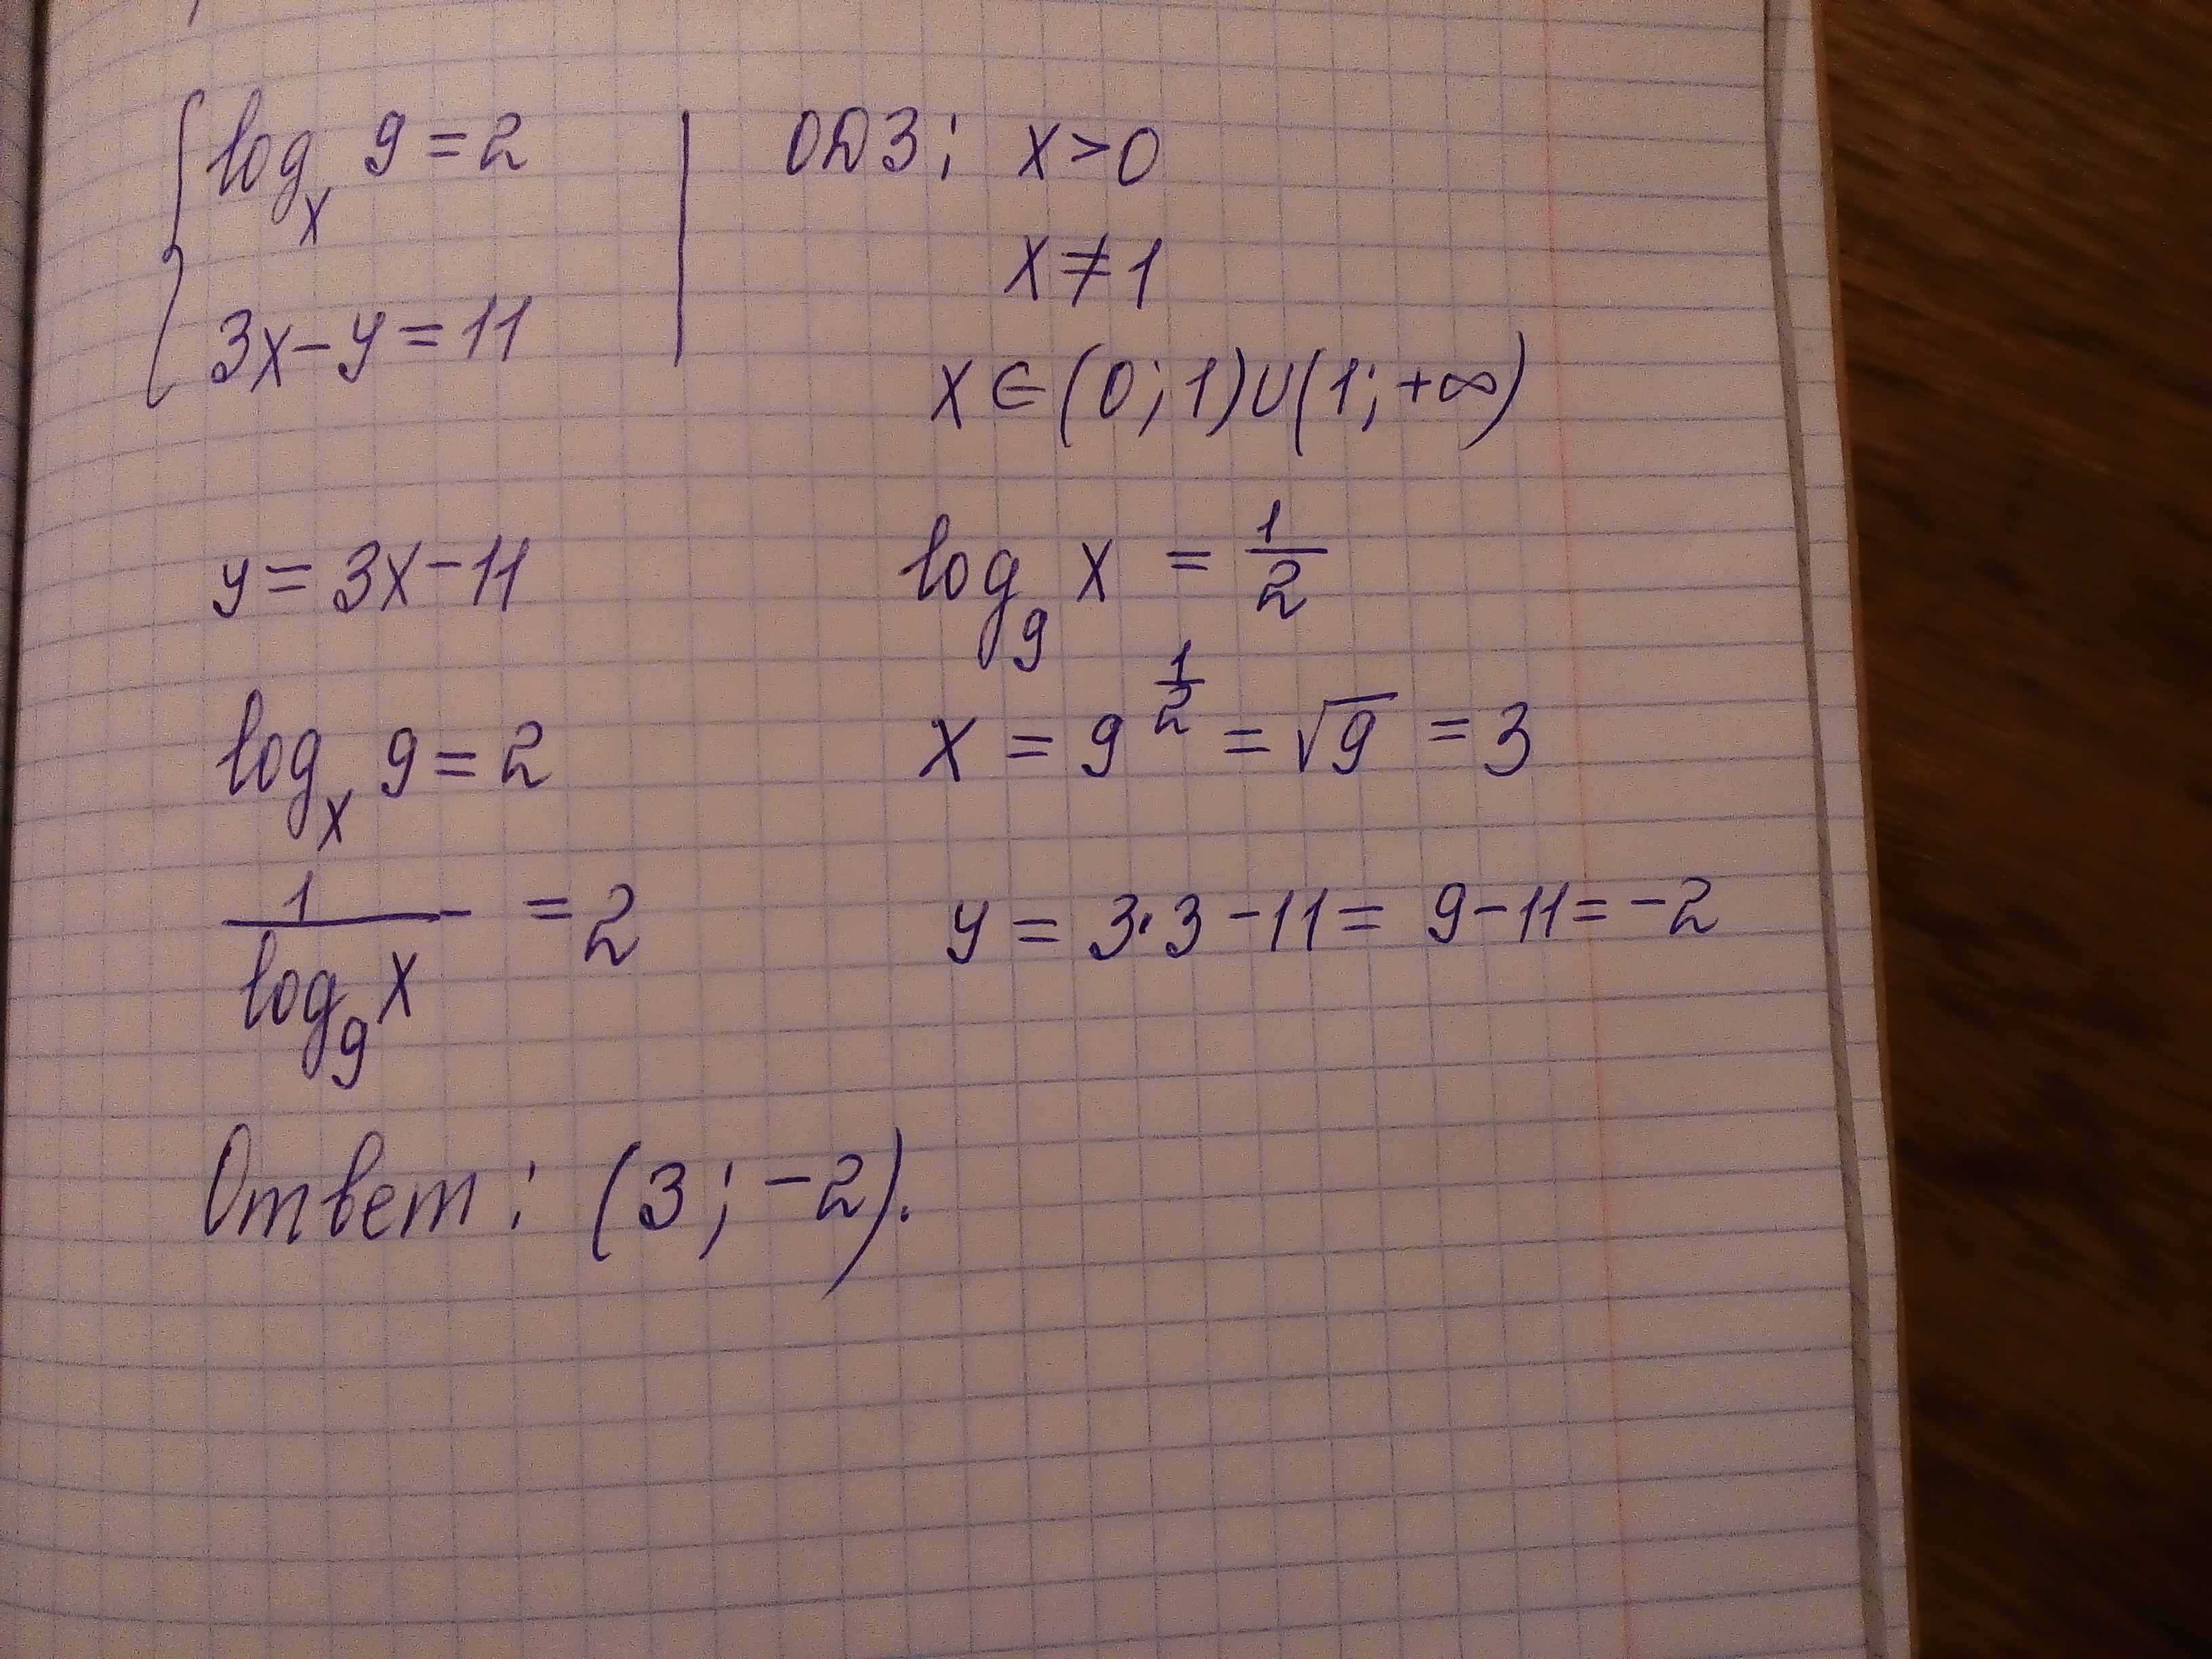 4x y 9 3x y 12. 2x+11y=15 10x-11y=9. Logx/3(logx корень из 3-x). 2x+11y 10x-11y. 2x+11y=15.